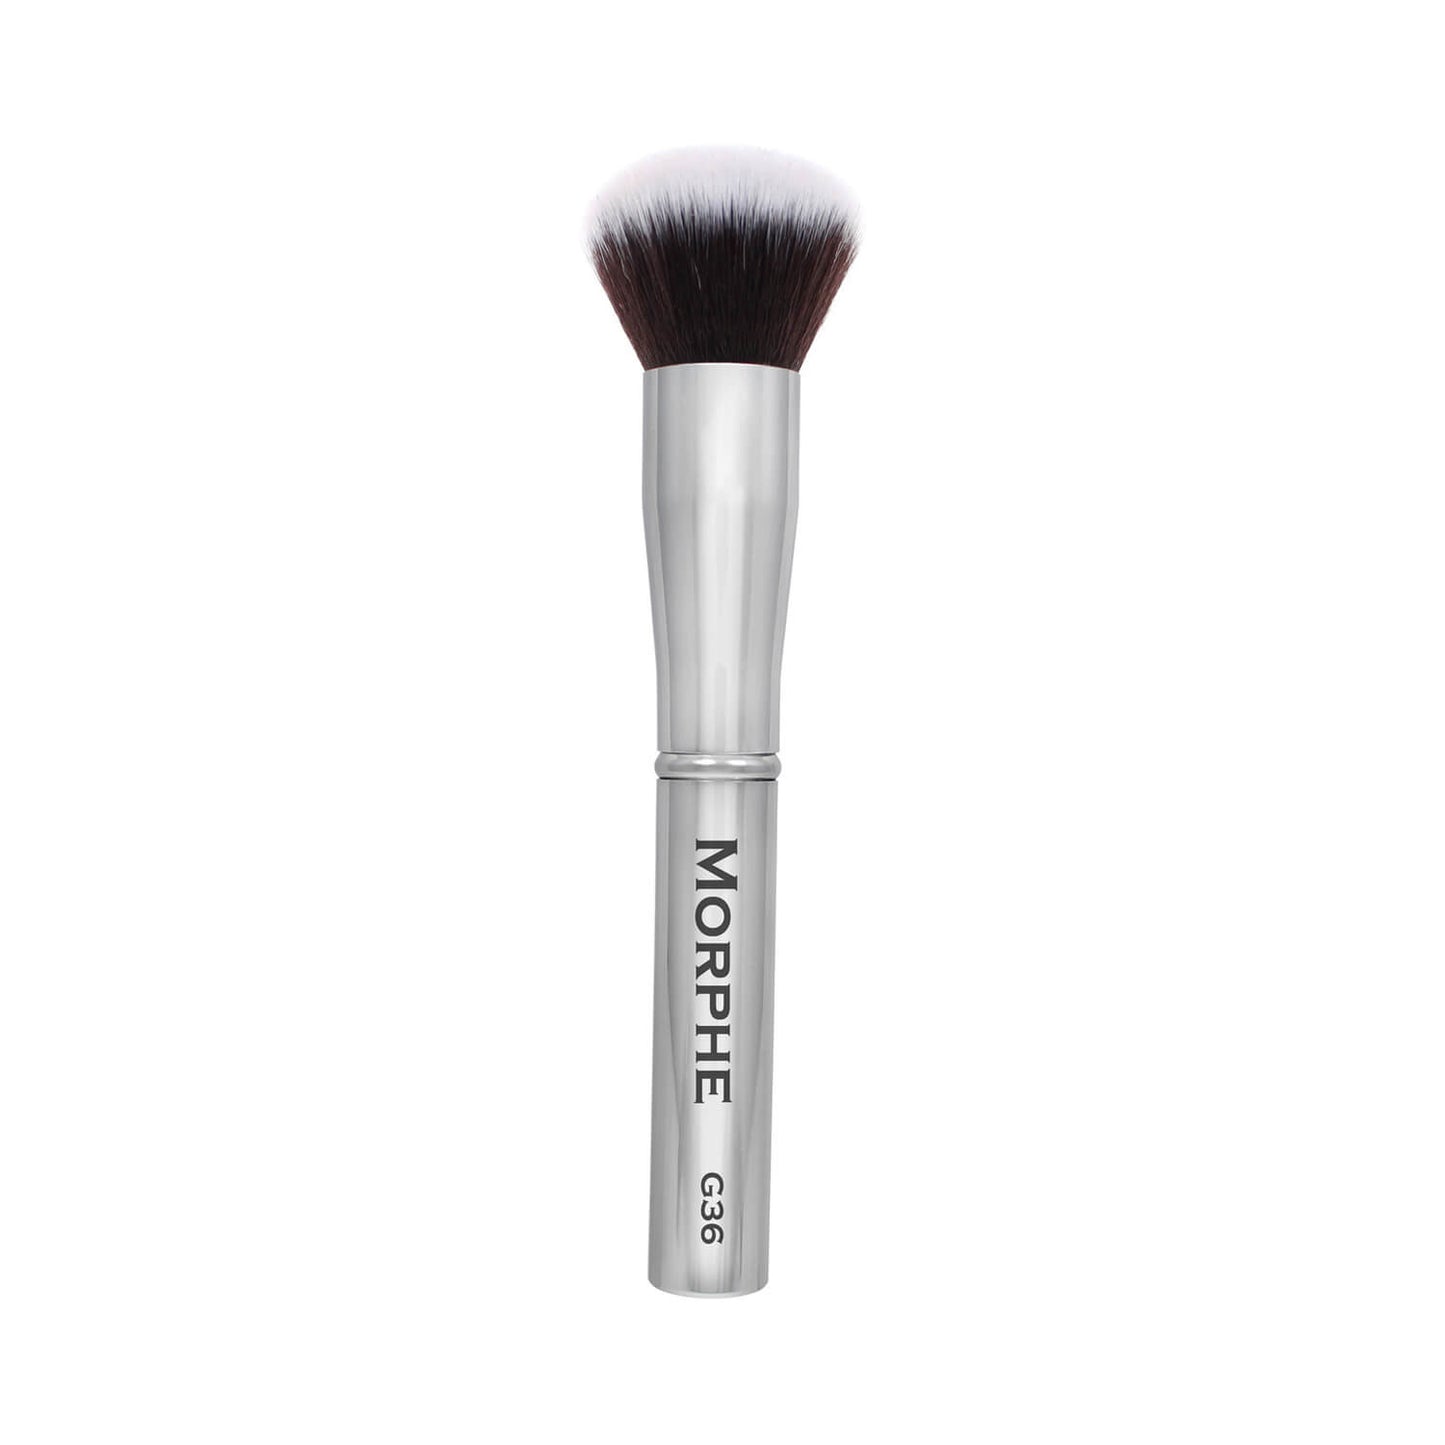 Morphe Cosmetics G36 Round Powder Brush